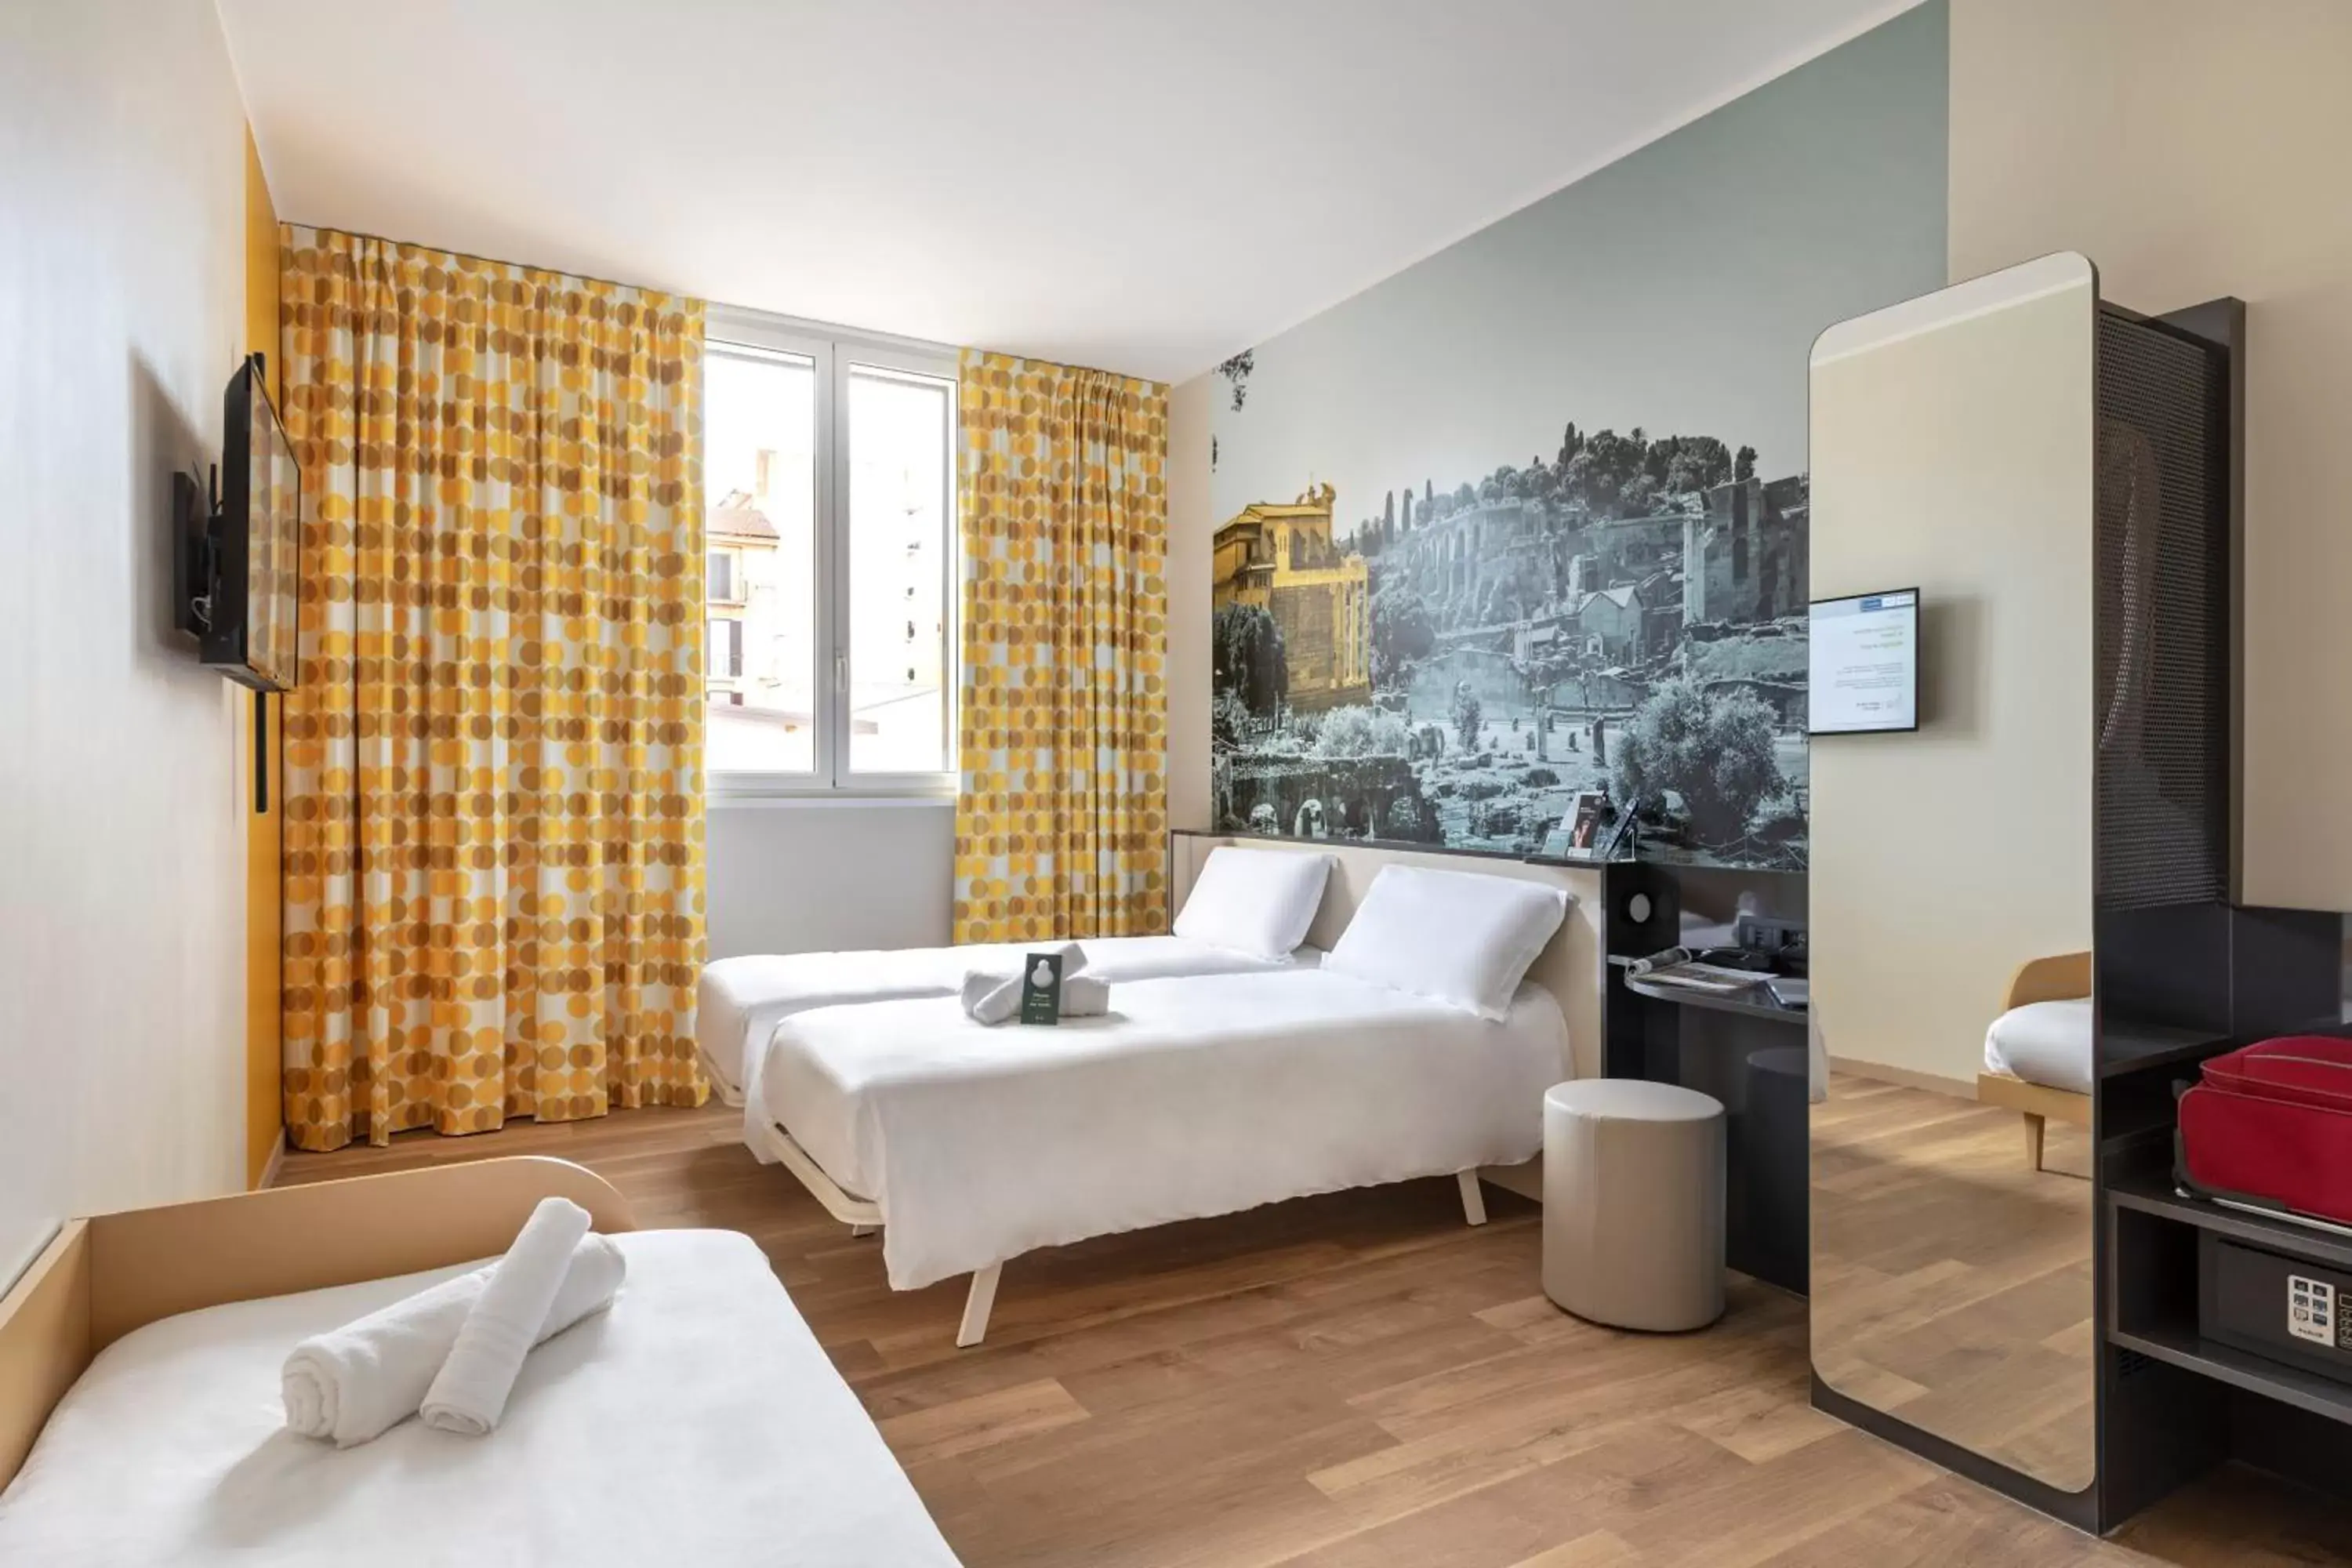 Bedroom, Seating Area in B&B Hotel Roma San Lorenzo Termini